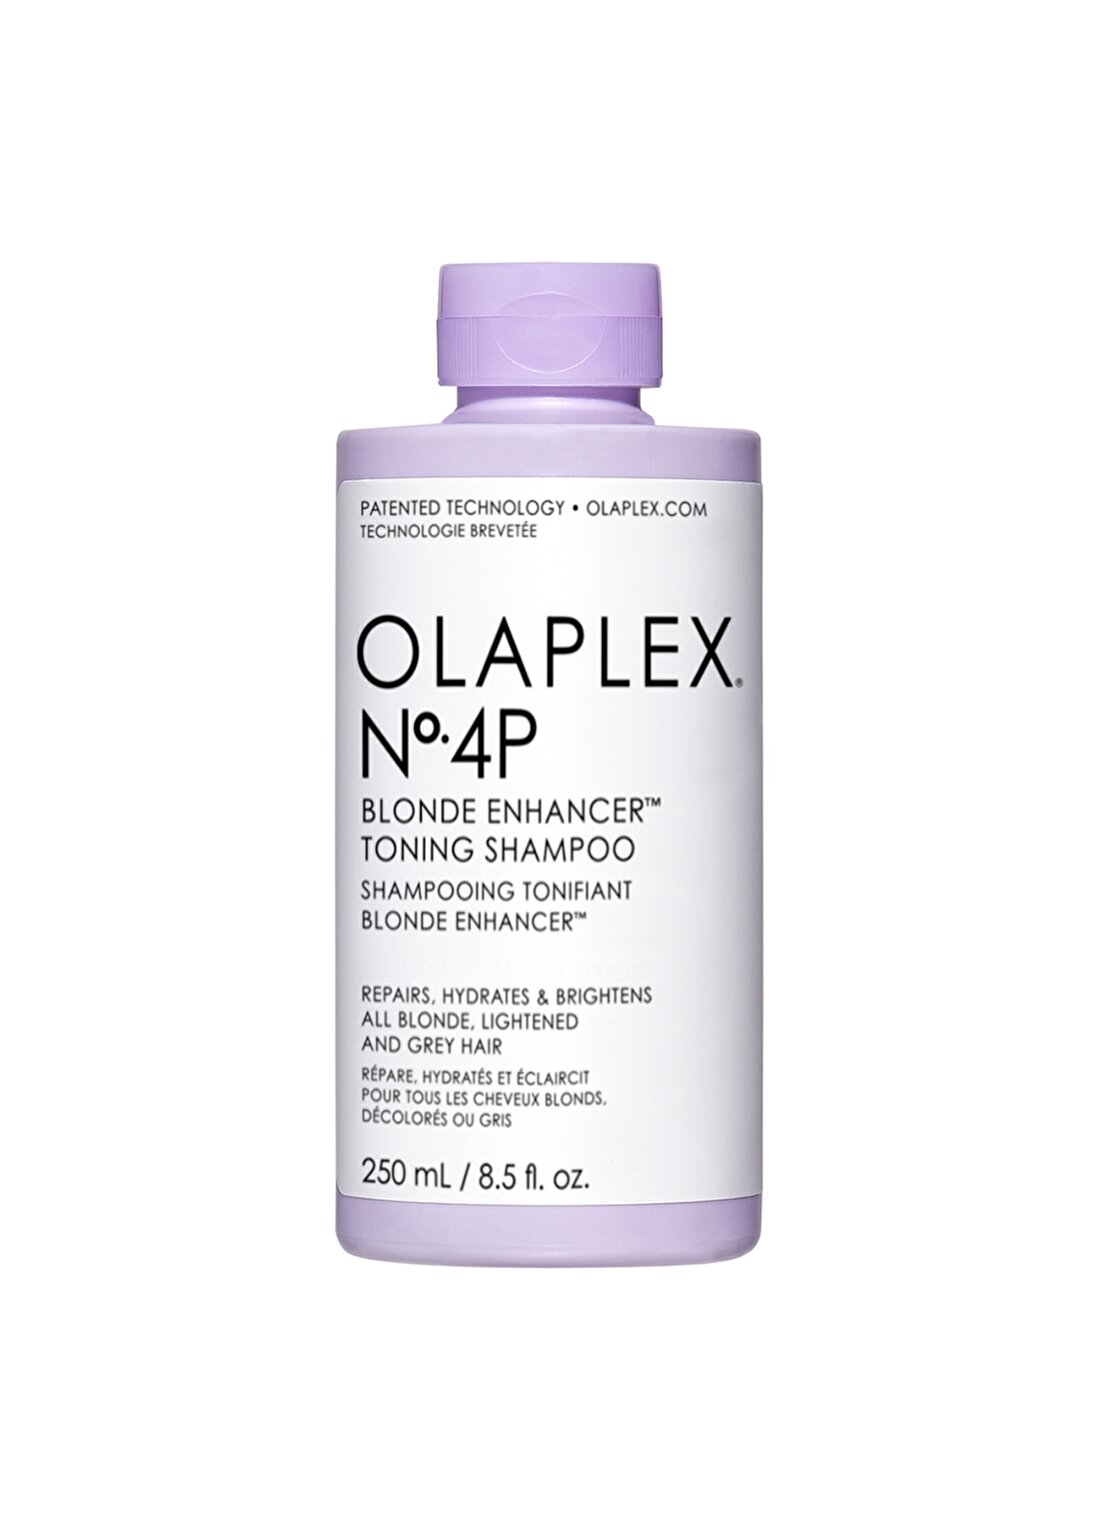 Olaplex Nº.4P Blonde Enhancer Toning Shampoo - Renk Koruyucu & Bağ Güçlendirici Mor Şampuan Purple